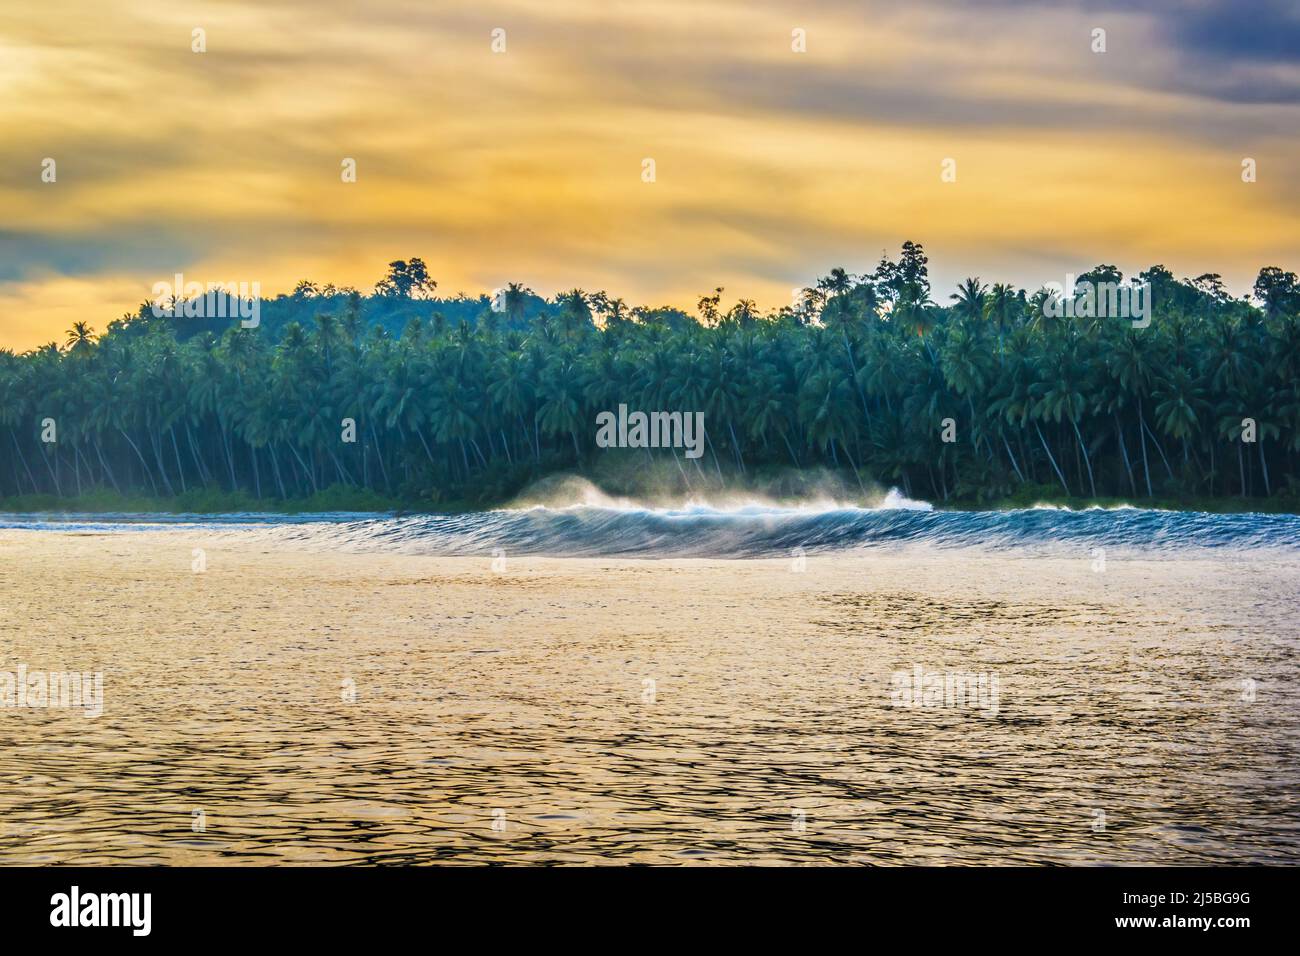 Palmengesäumter Strand auf einer tropischen Insel in der Morgendämmerung oder Abenddämmerung, vom umgebenden Ozean aus gesehen Stockfoto